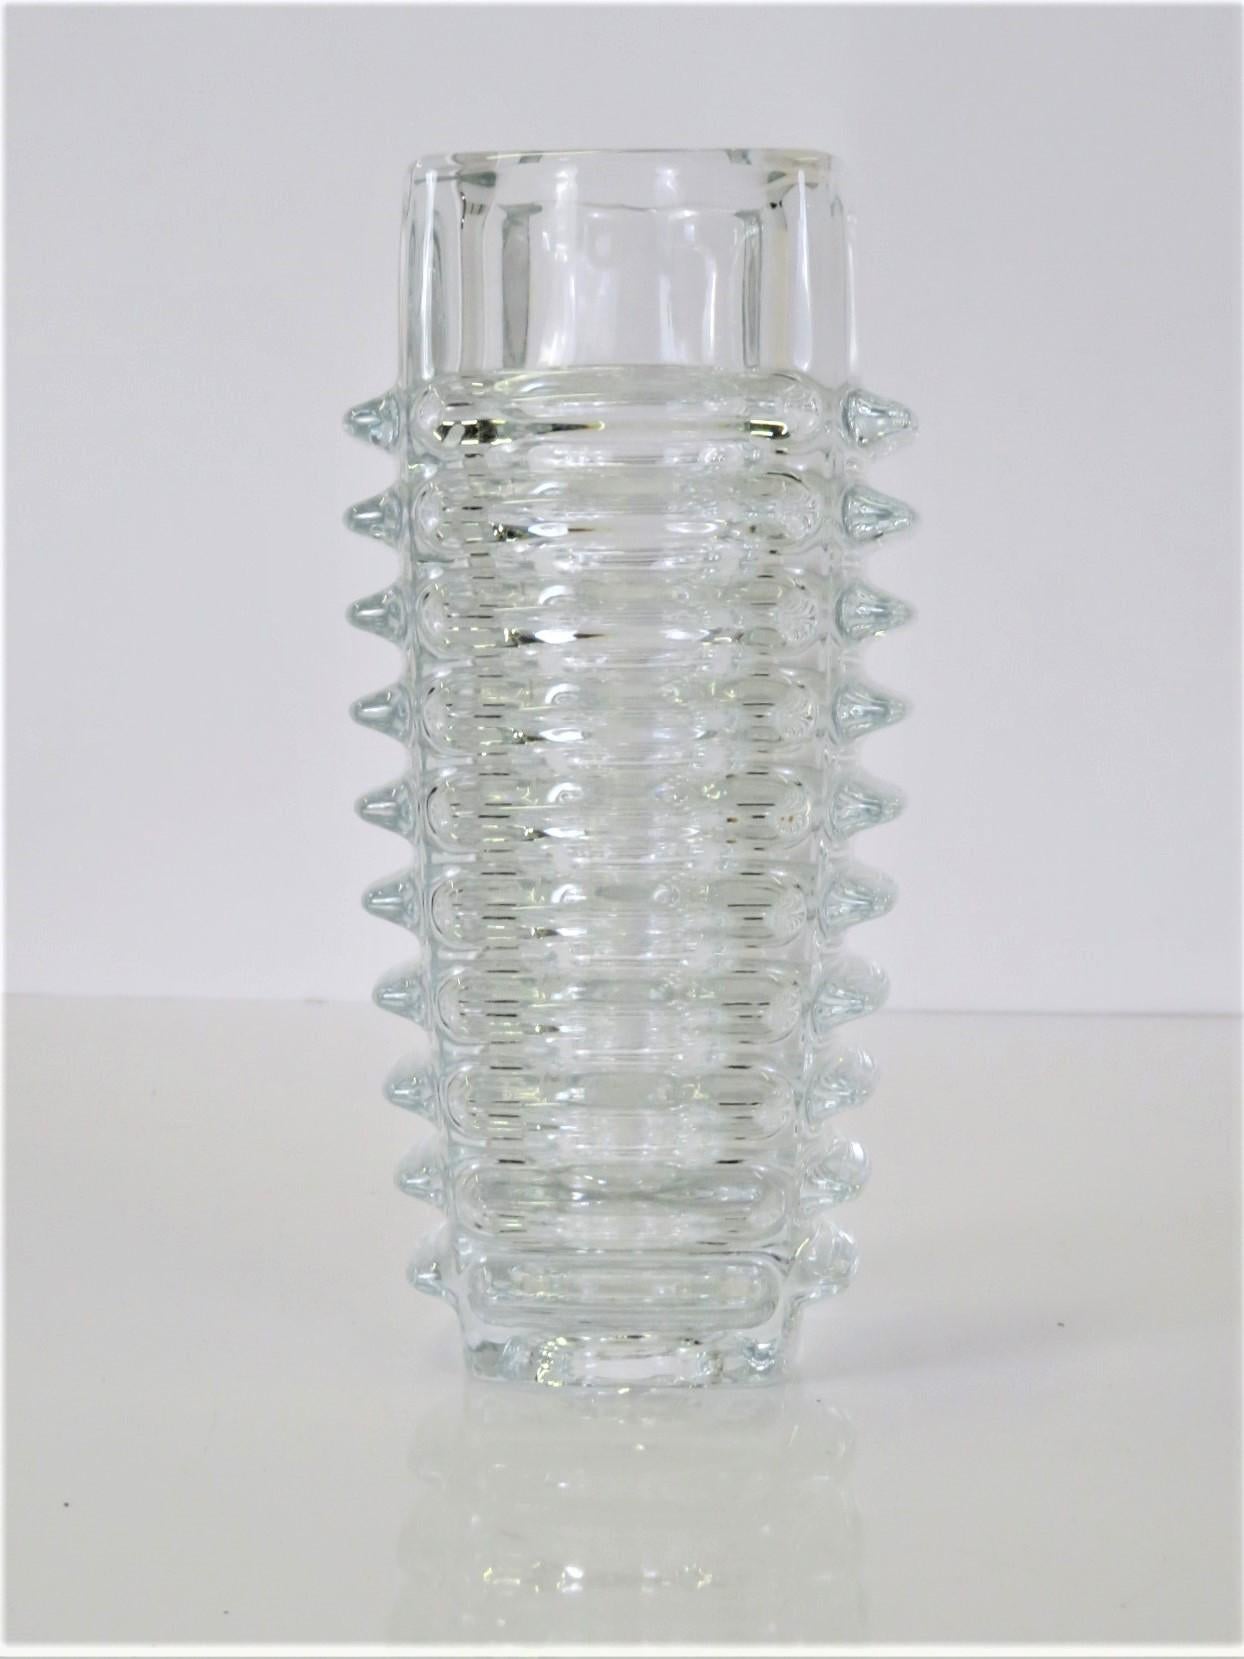 Mid-Century Modern Modern Czech Pressed Glass Vase by Frantisek Vizner for Sklo Union Rosice, 1963